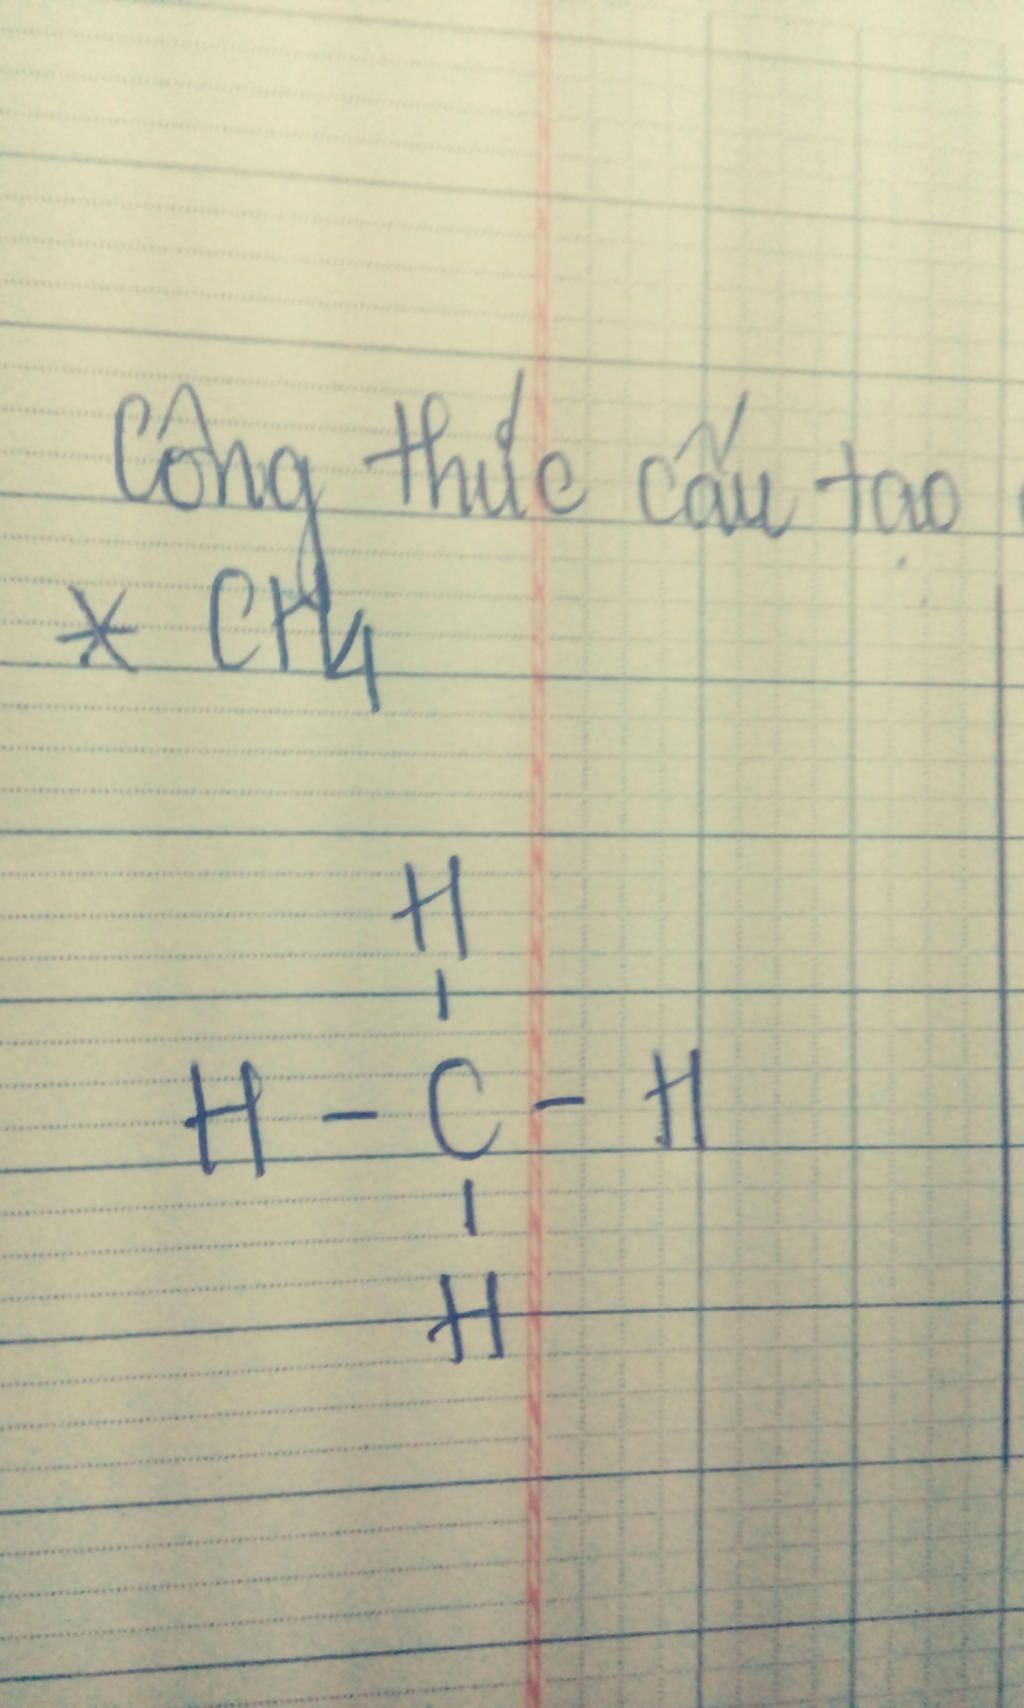 C2H4 thuộc vào nhóm hợp chất nào trong hóa học hữu cơ?